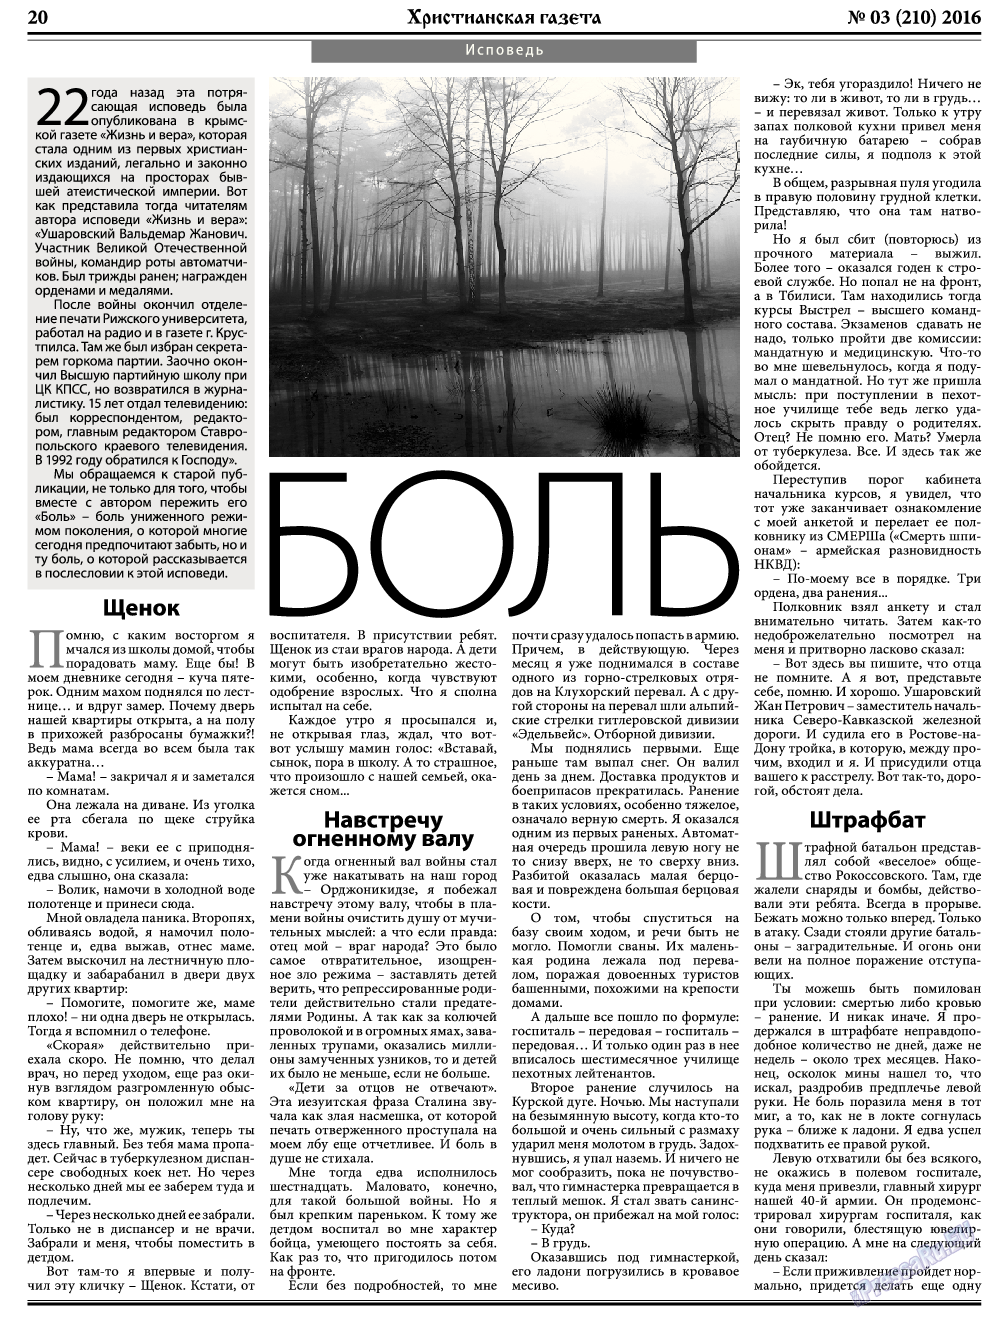 Христианская газета, газета. 2016 №3 стр.28